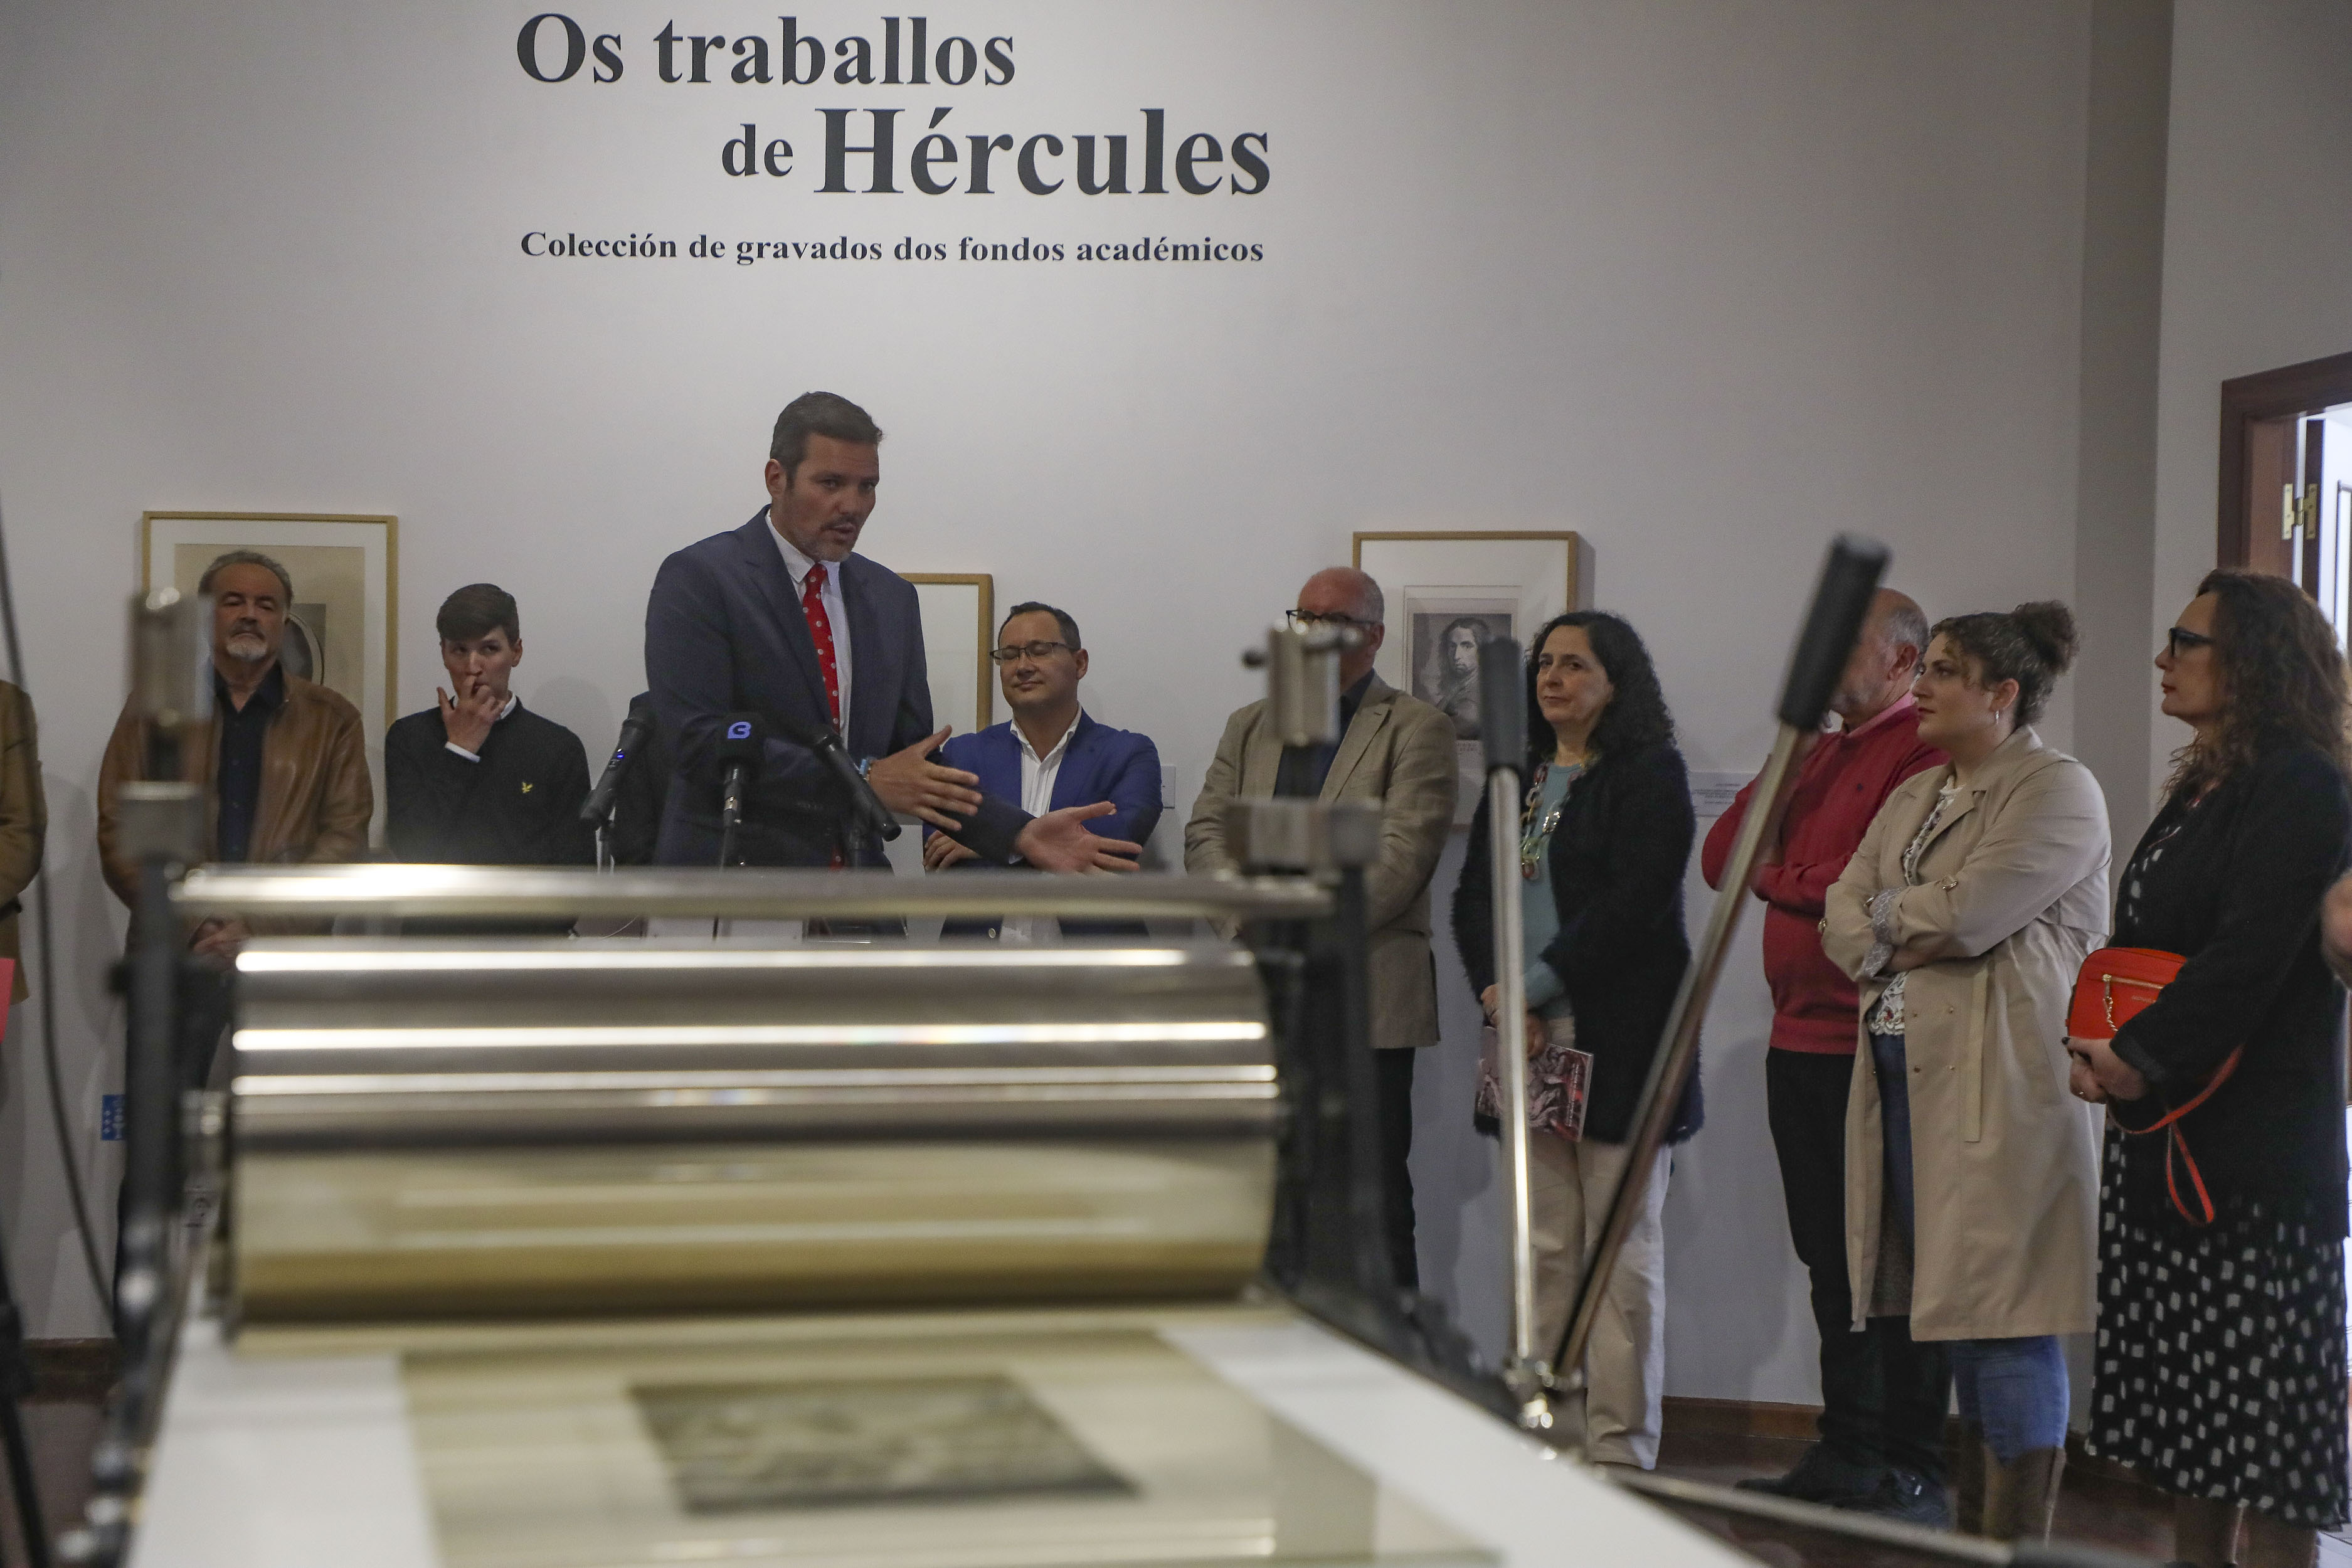 Image 1 of article López Campos convida a redescubrir a historia da Real Academia Galega de Belas Artes coa nova exposición Os traballos de Hércules